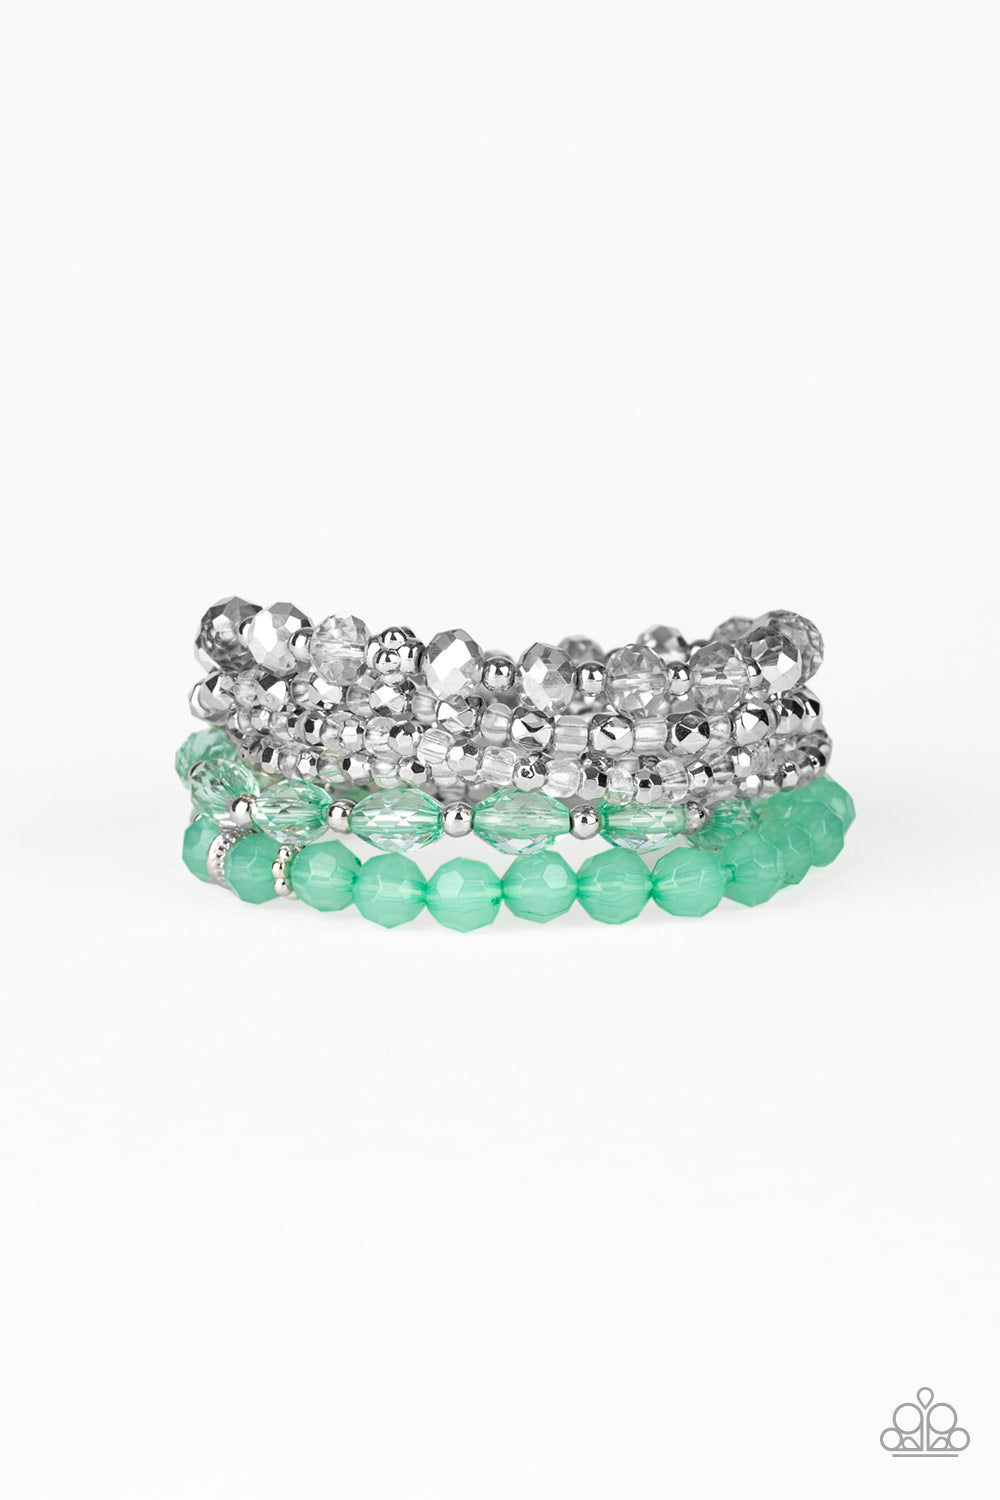 Crystal Collage - Green Bracelet